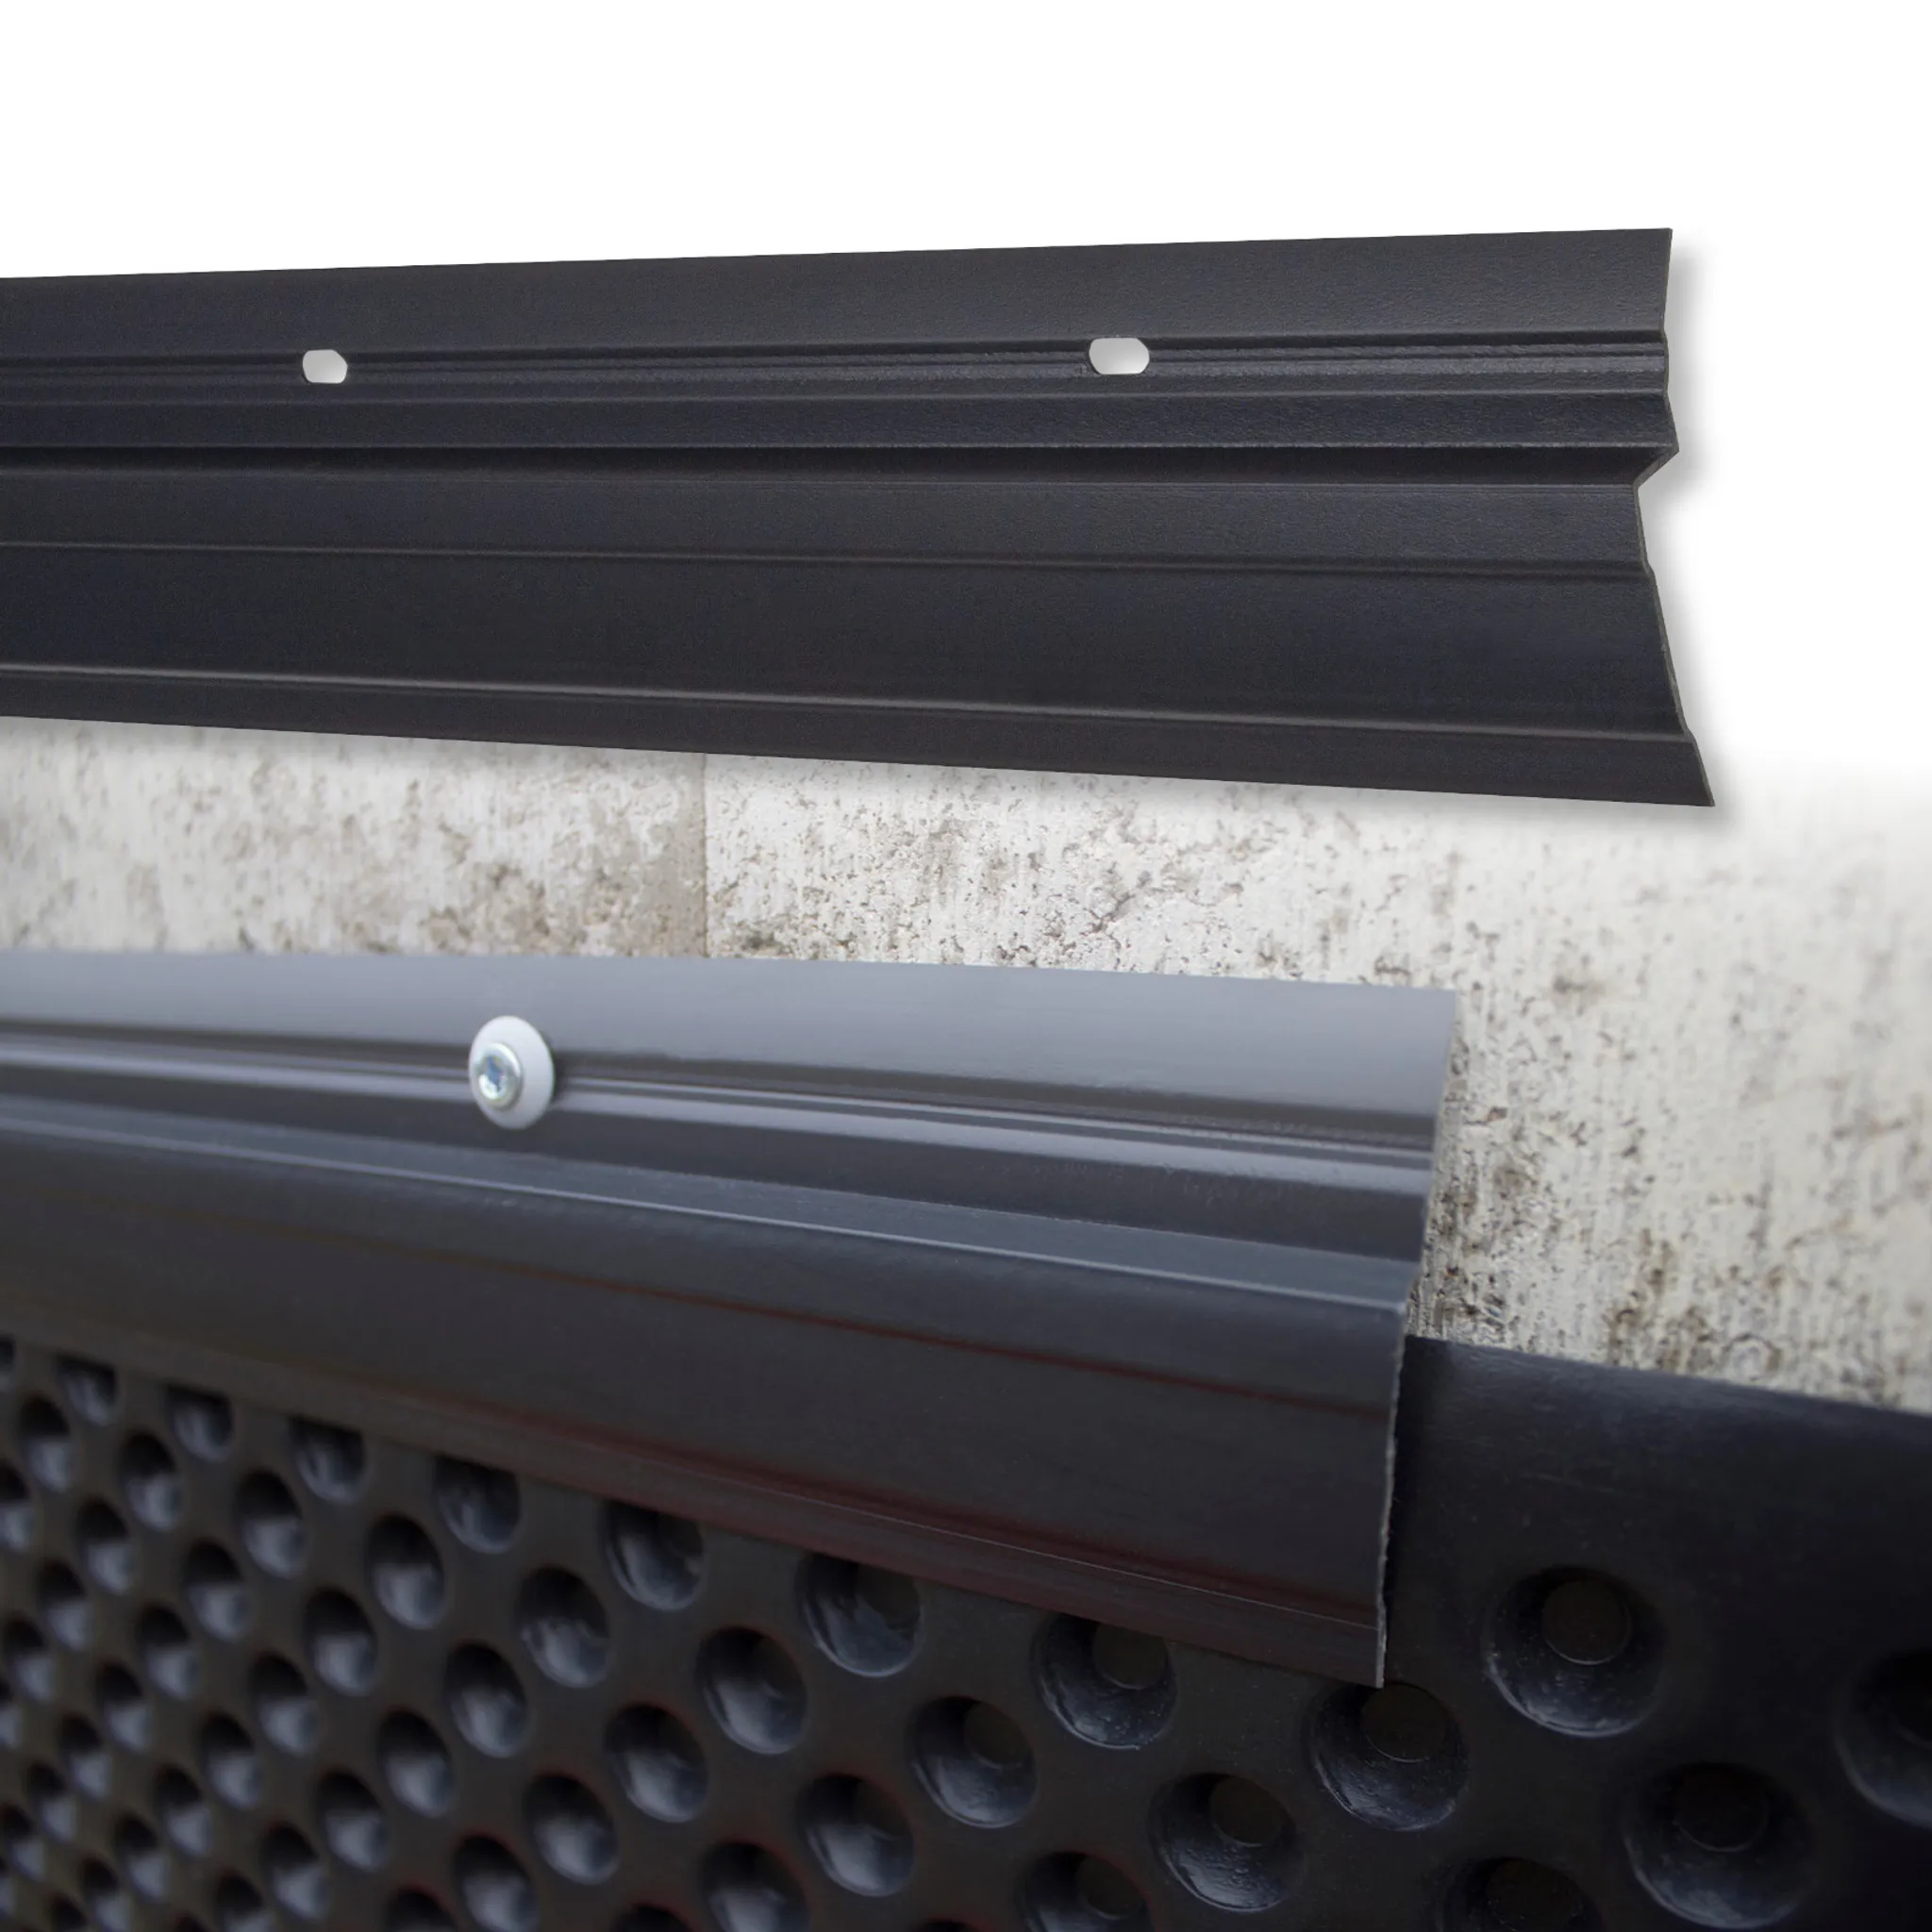 LEMAL U-Profil PT5, PVC Kunststoff weiß für 12,5mm Rigipsplatten